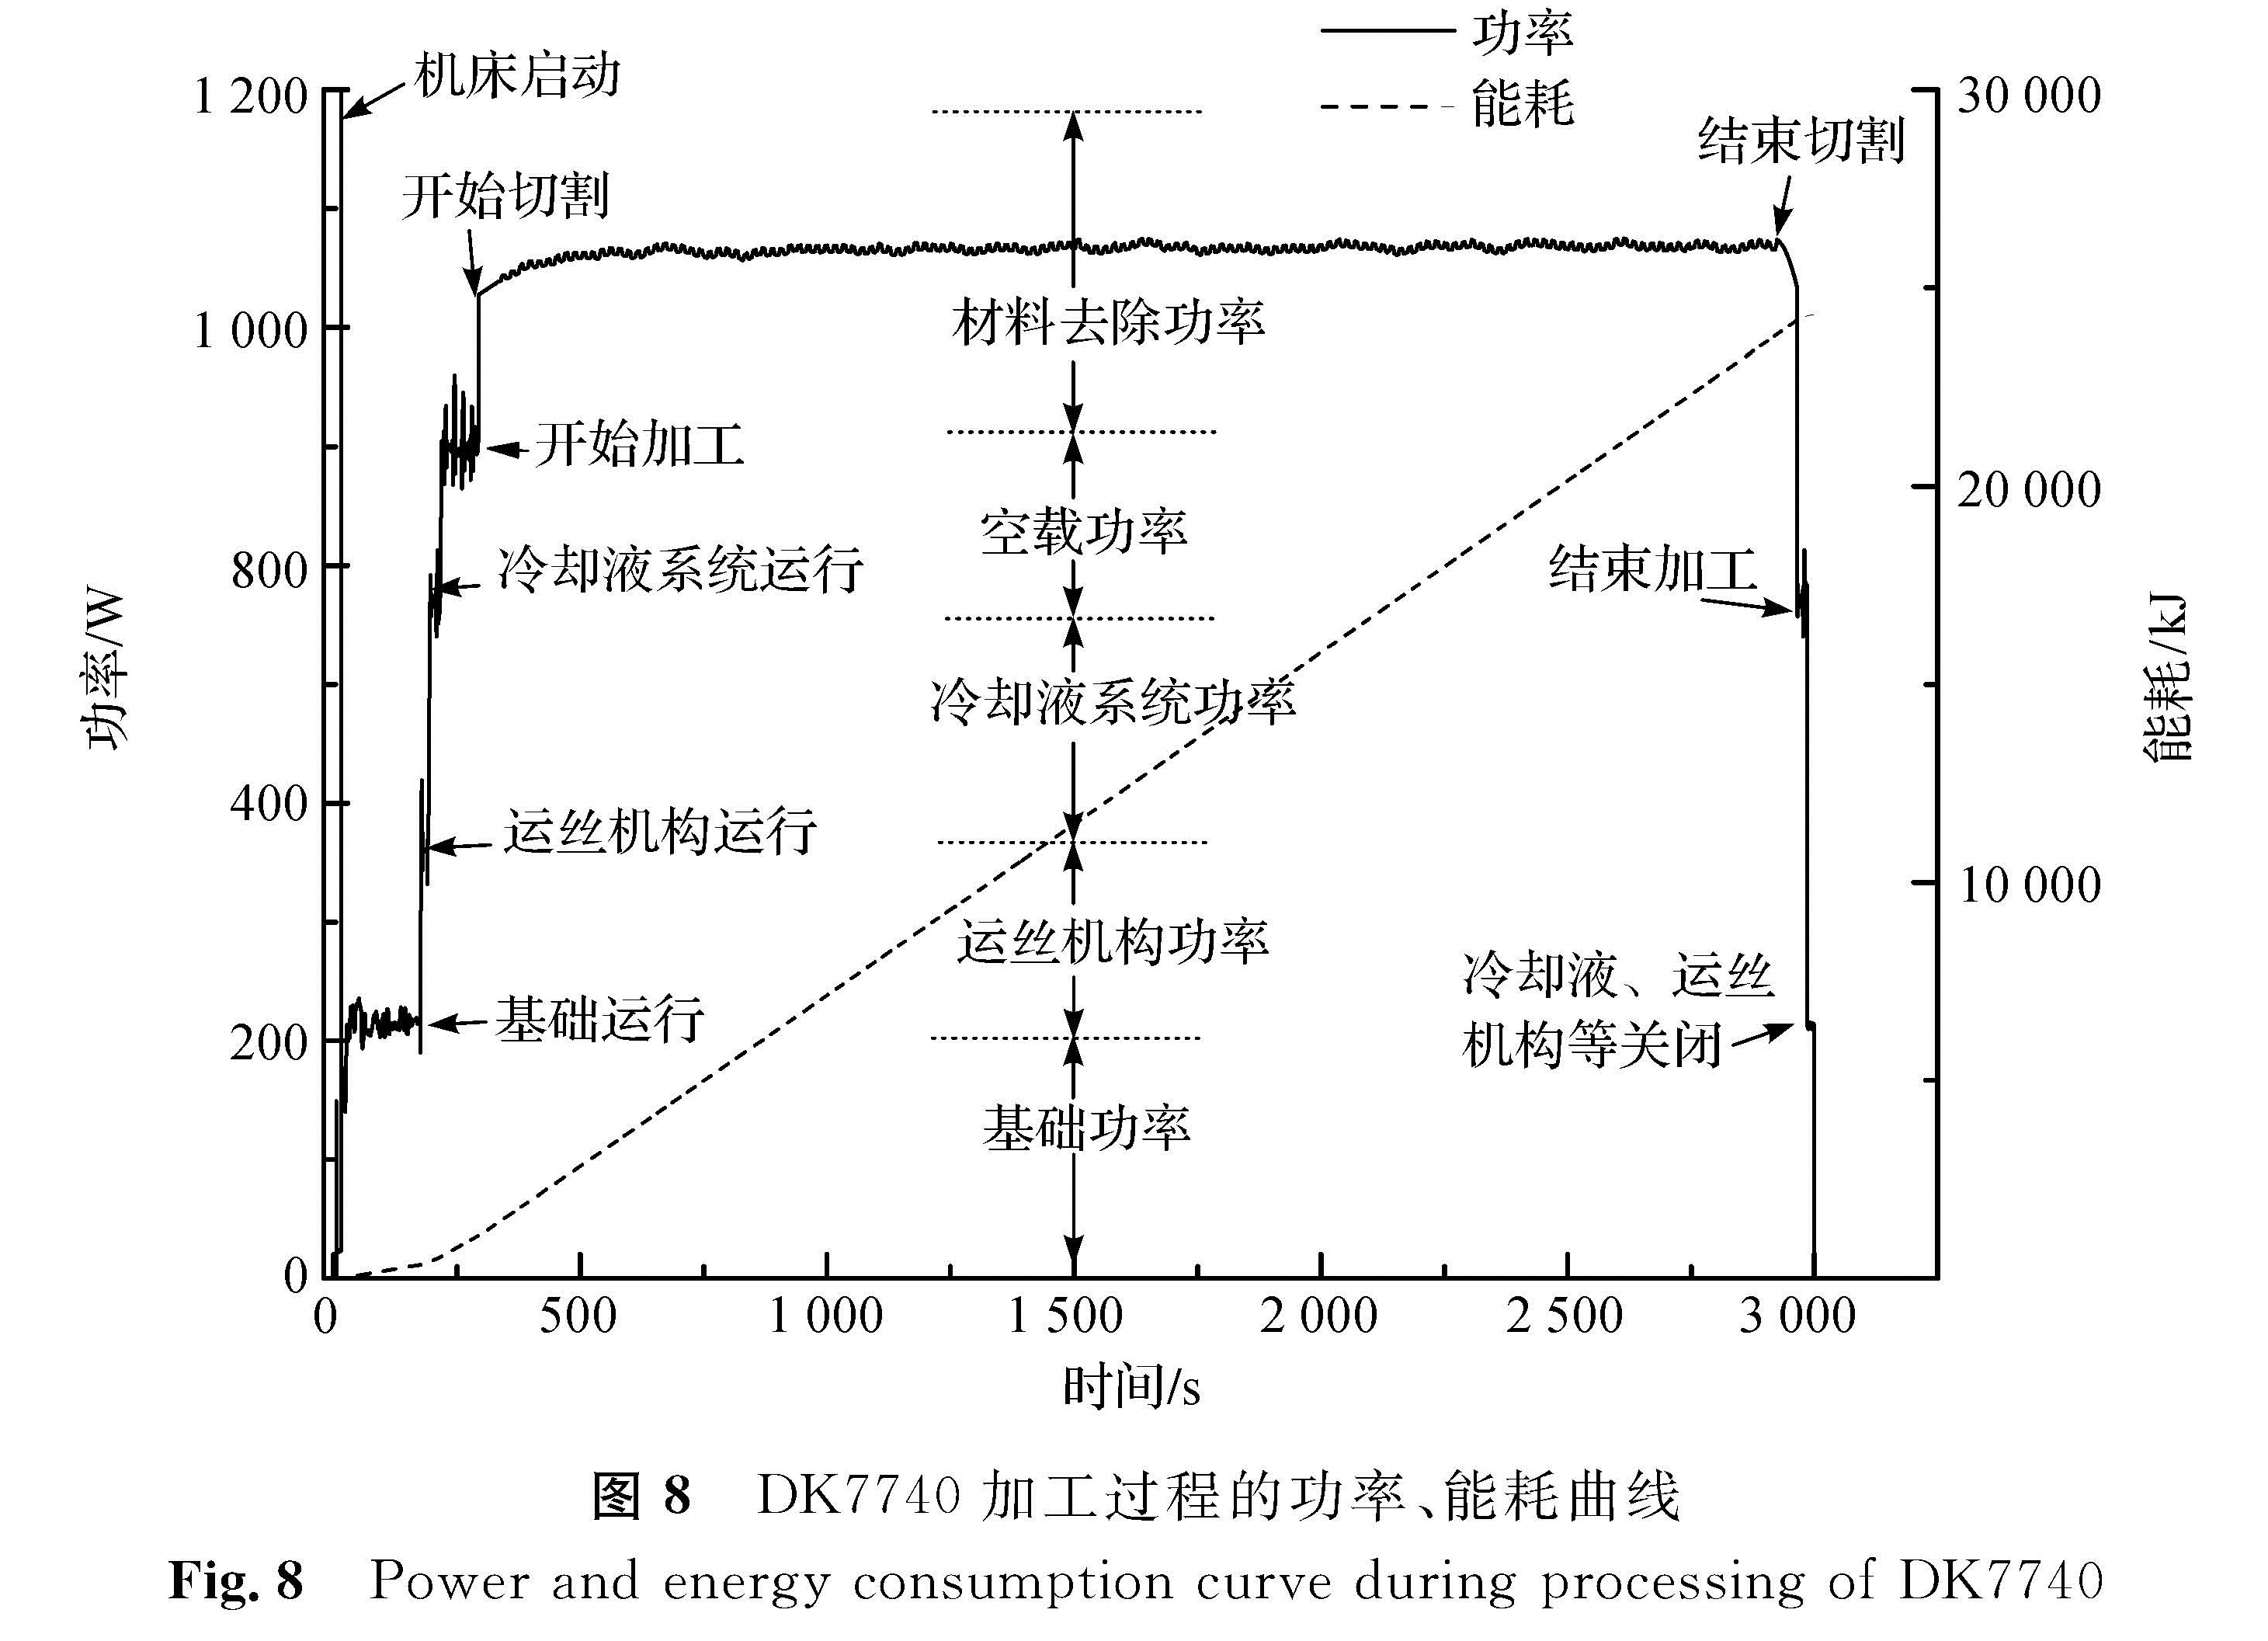 图8 DK7740加工过程的功率、能耗曲线<br/>Fig.8 Power and energy consumption curve during processing of DK7740